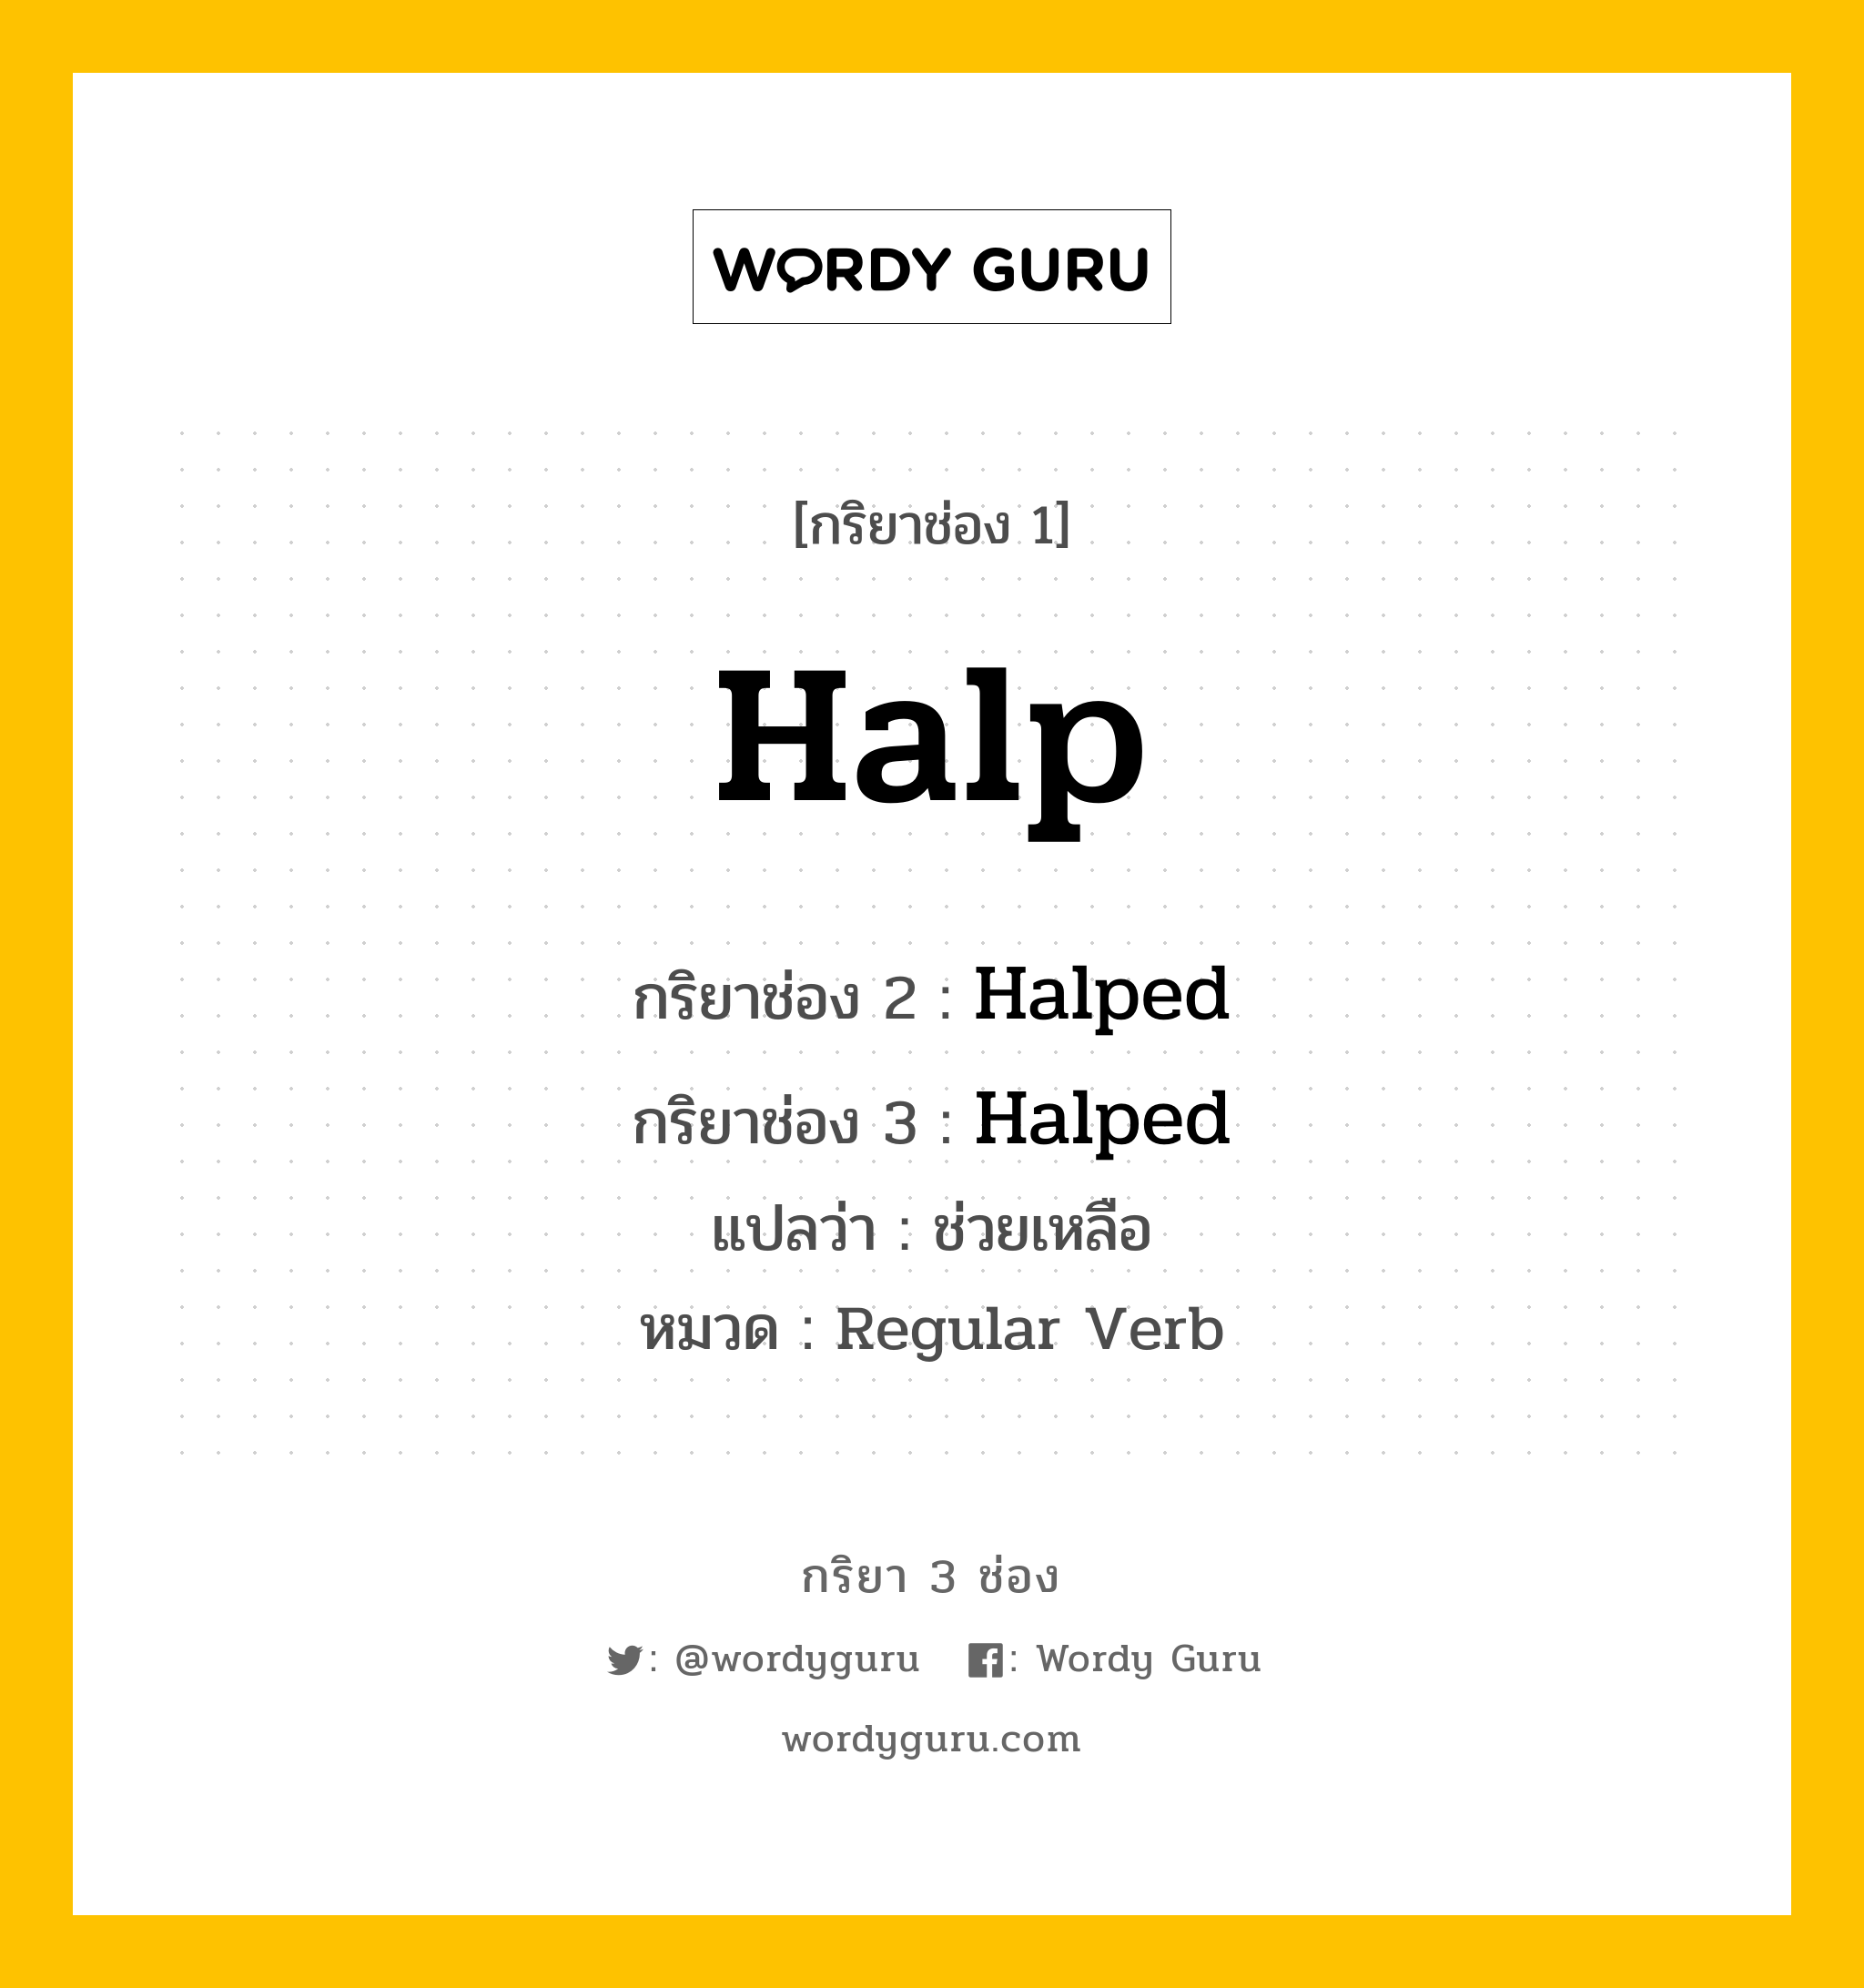 กริยา 3 ช่อง: Halp ช่อง 2 Halp ช่อง 3 คืออะไร, กริยาช่อง 1 Halp กริยาช่อง 2 Halped กริยาช่อง 3 Halped แปลว่า ช่วยเหลือ หมวด Regular Verb หมวด Regular Verb